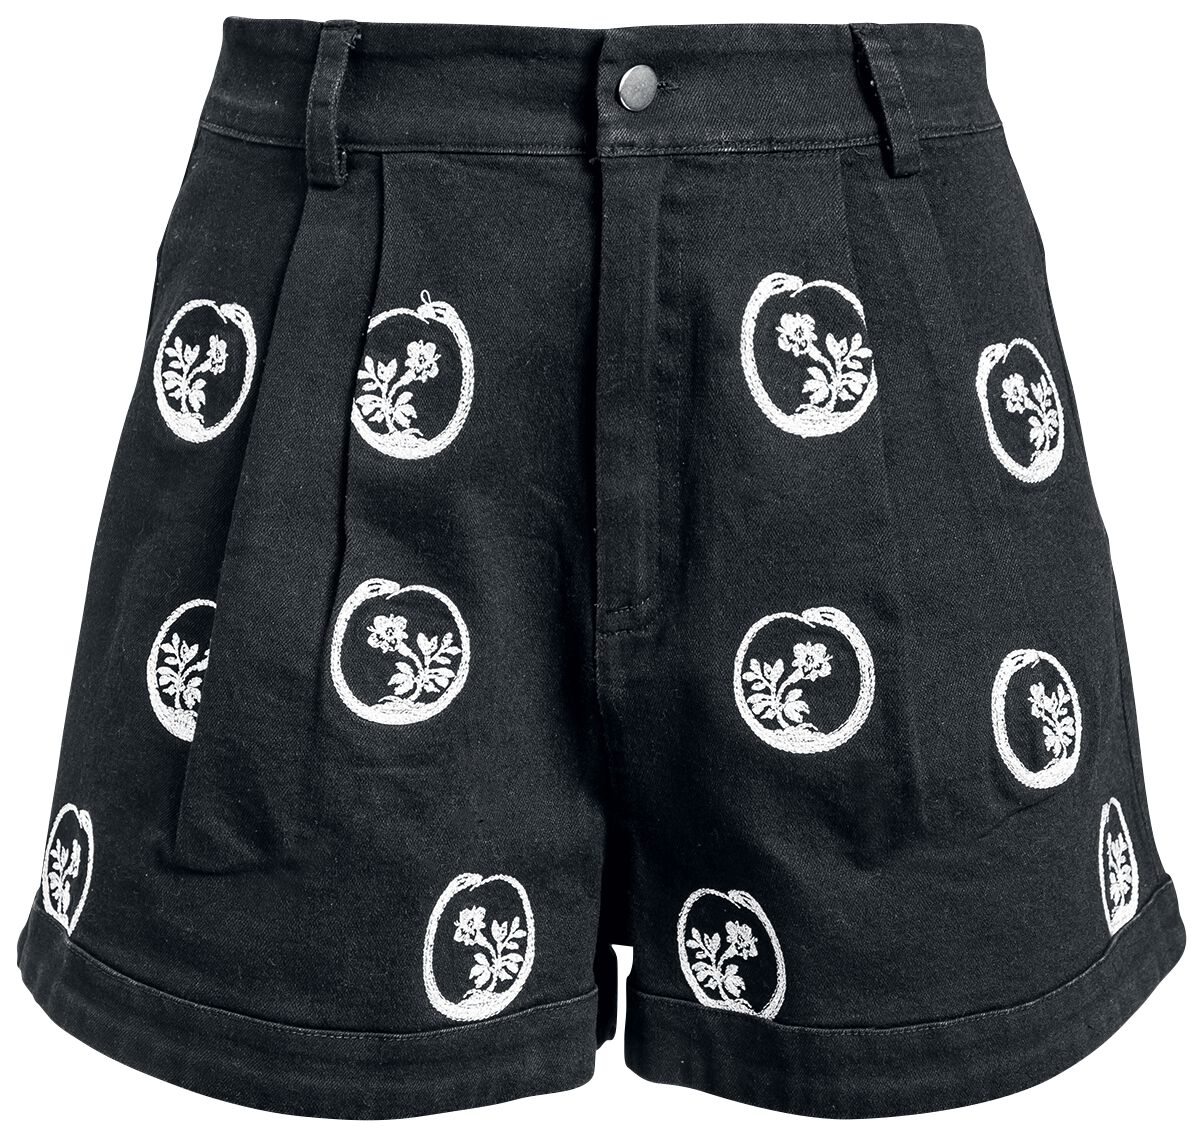 Jawbreaker Gothic Short Twill Mini Skirt XS bis M für Damen Größe M schwarz weiß  - Onlineshop EMP